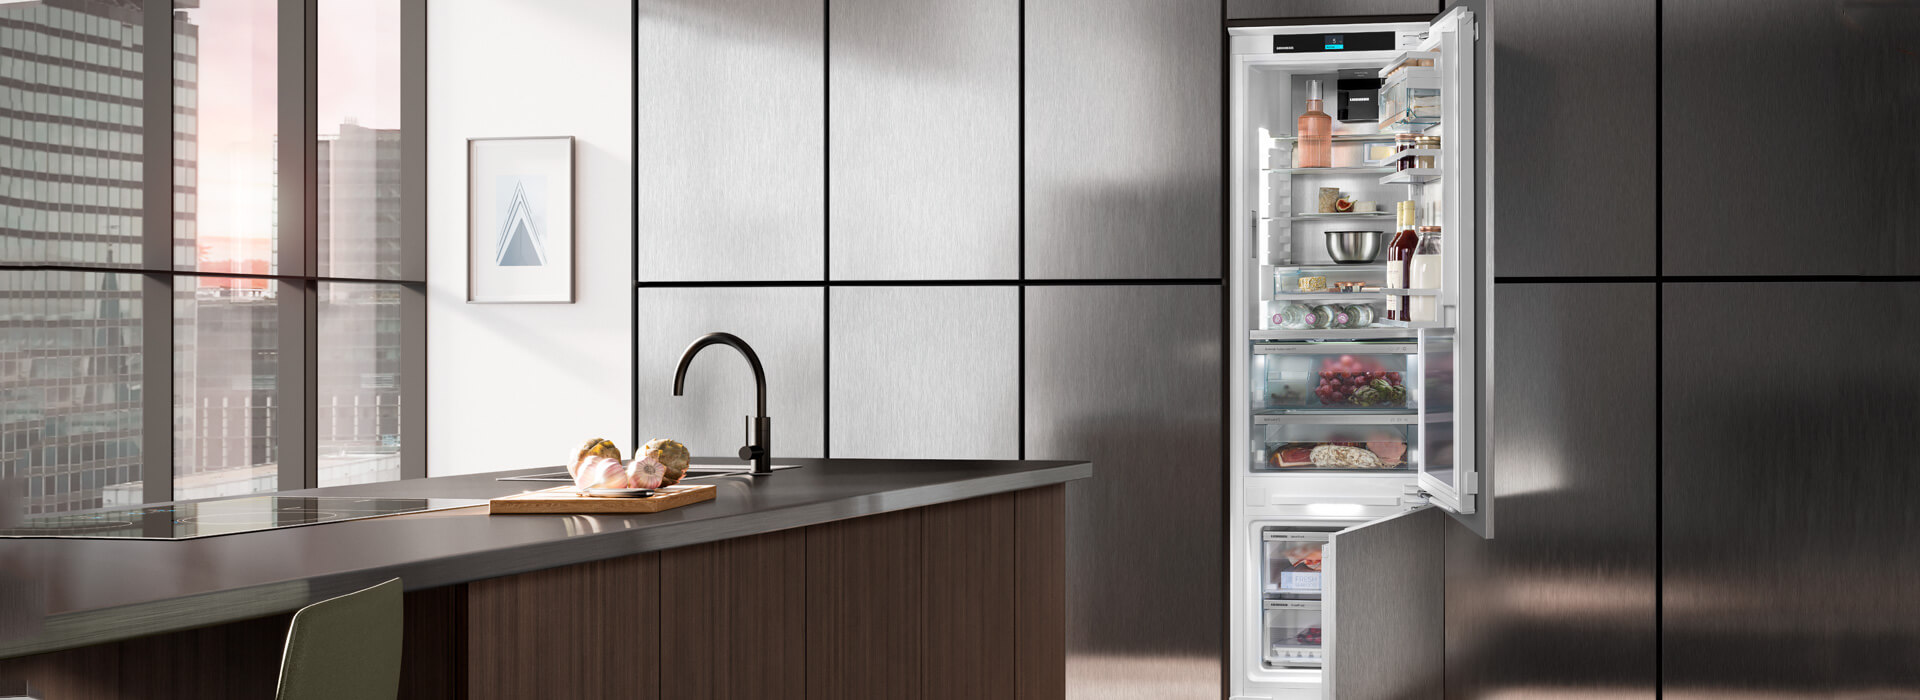 Link utili: Il fabbricatore del frigorifero non eroga il ghiaccio?